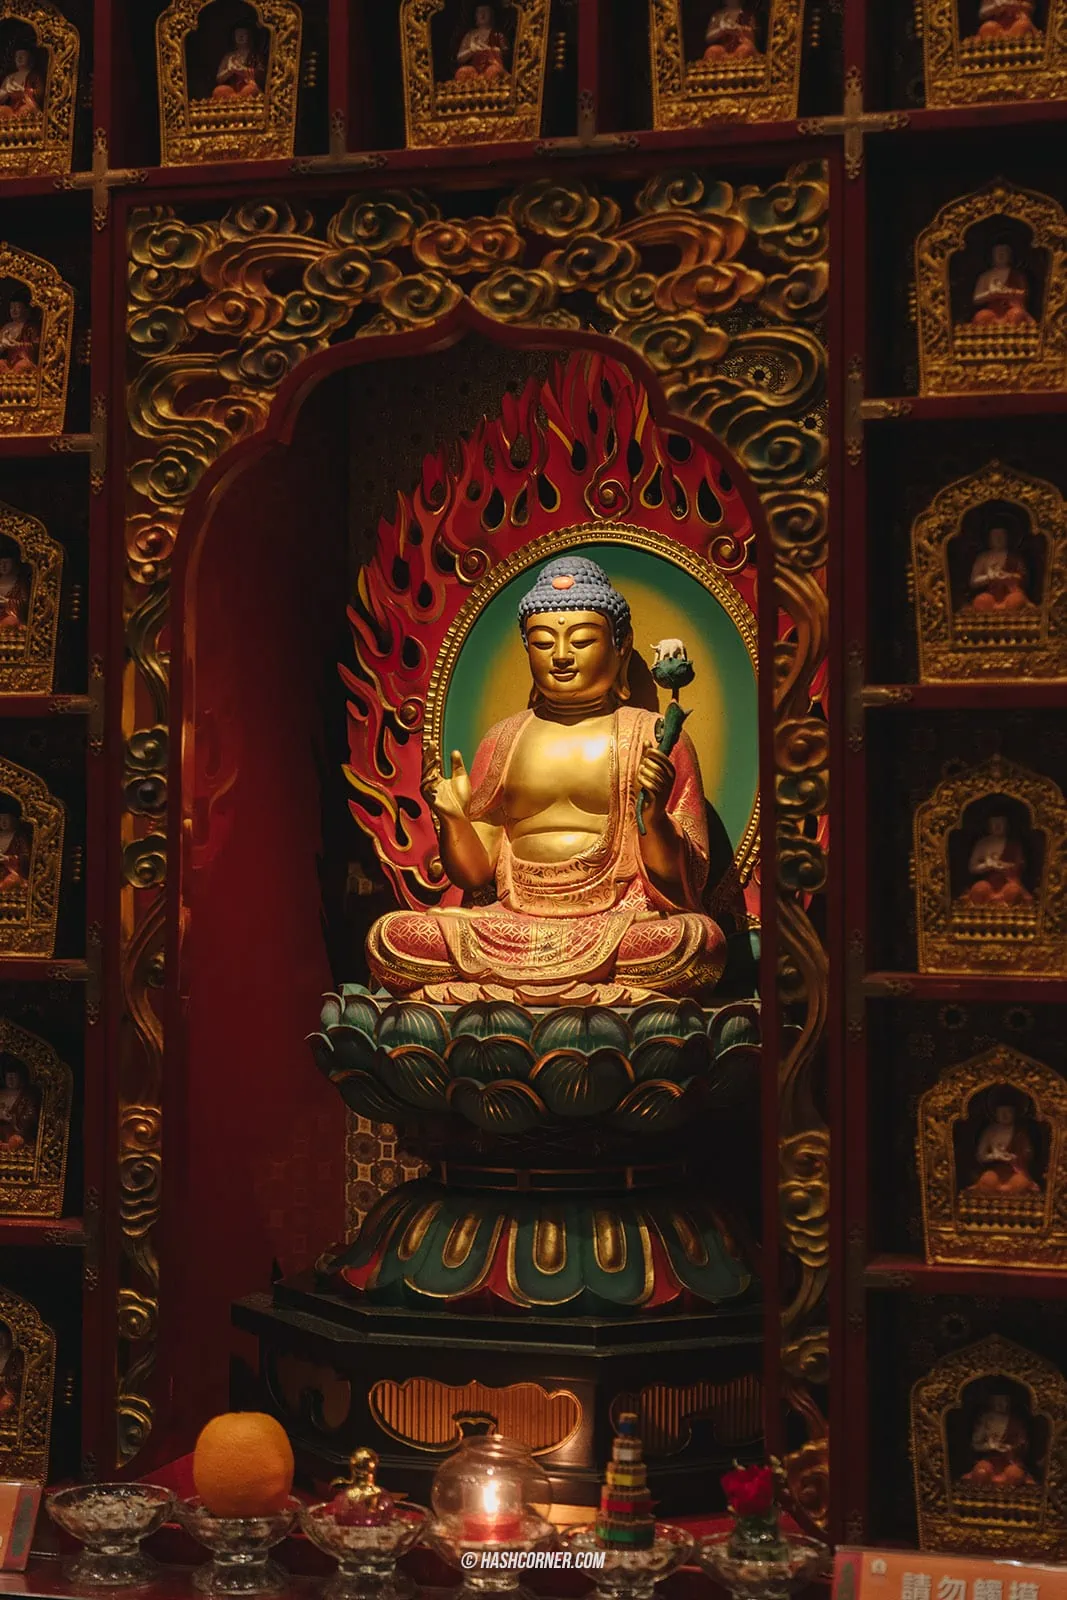 รีวิว วัดพระเขี้ยวแก้ว (Buddha Tooth Relic Temple) x สิงคโปร์